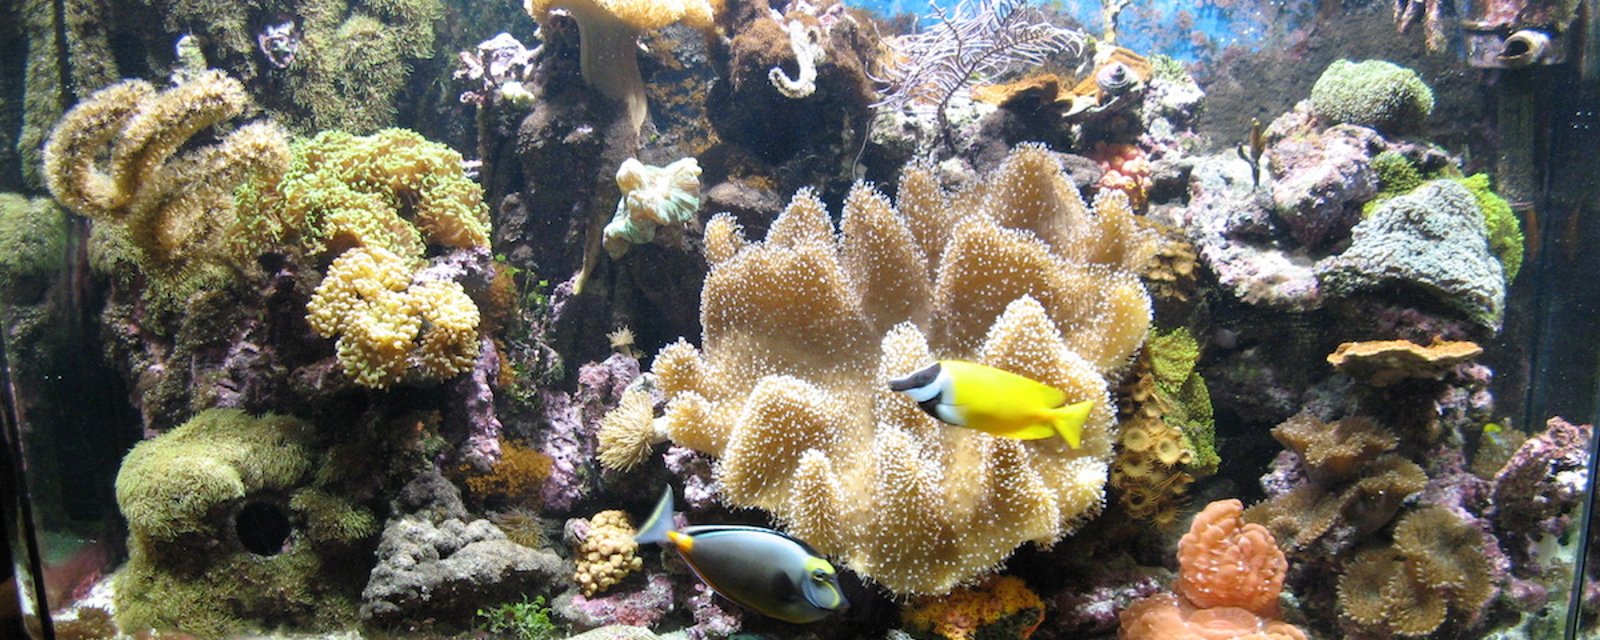 Une femme a été intoxiquée par les coraux que contenait son aquarium